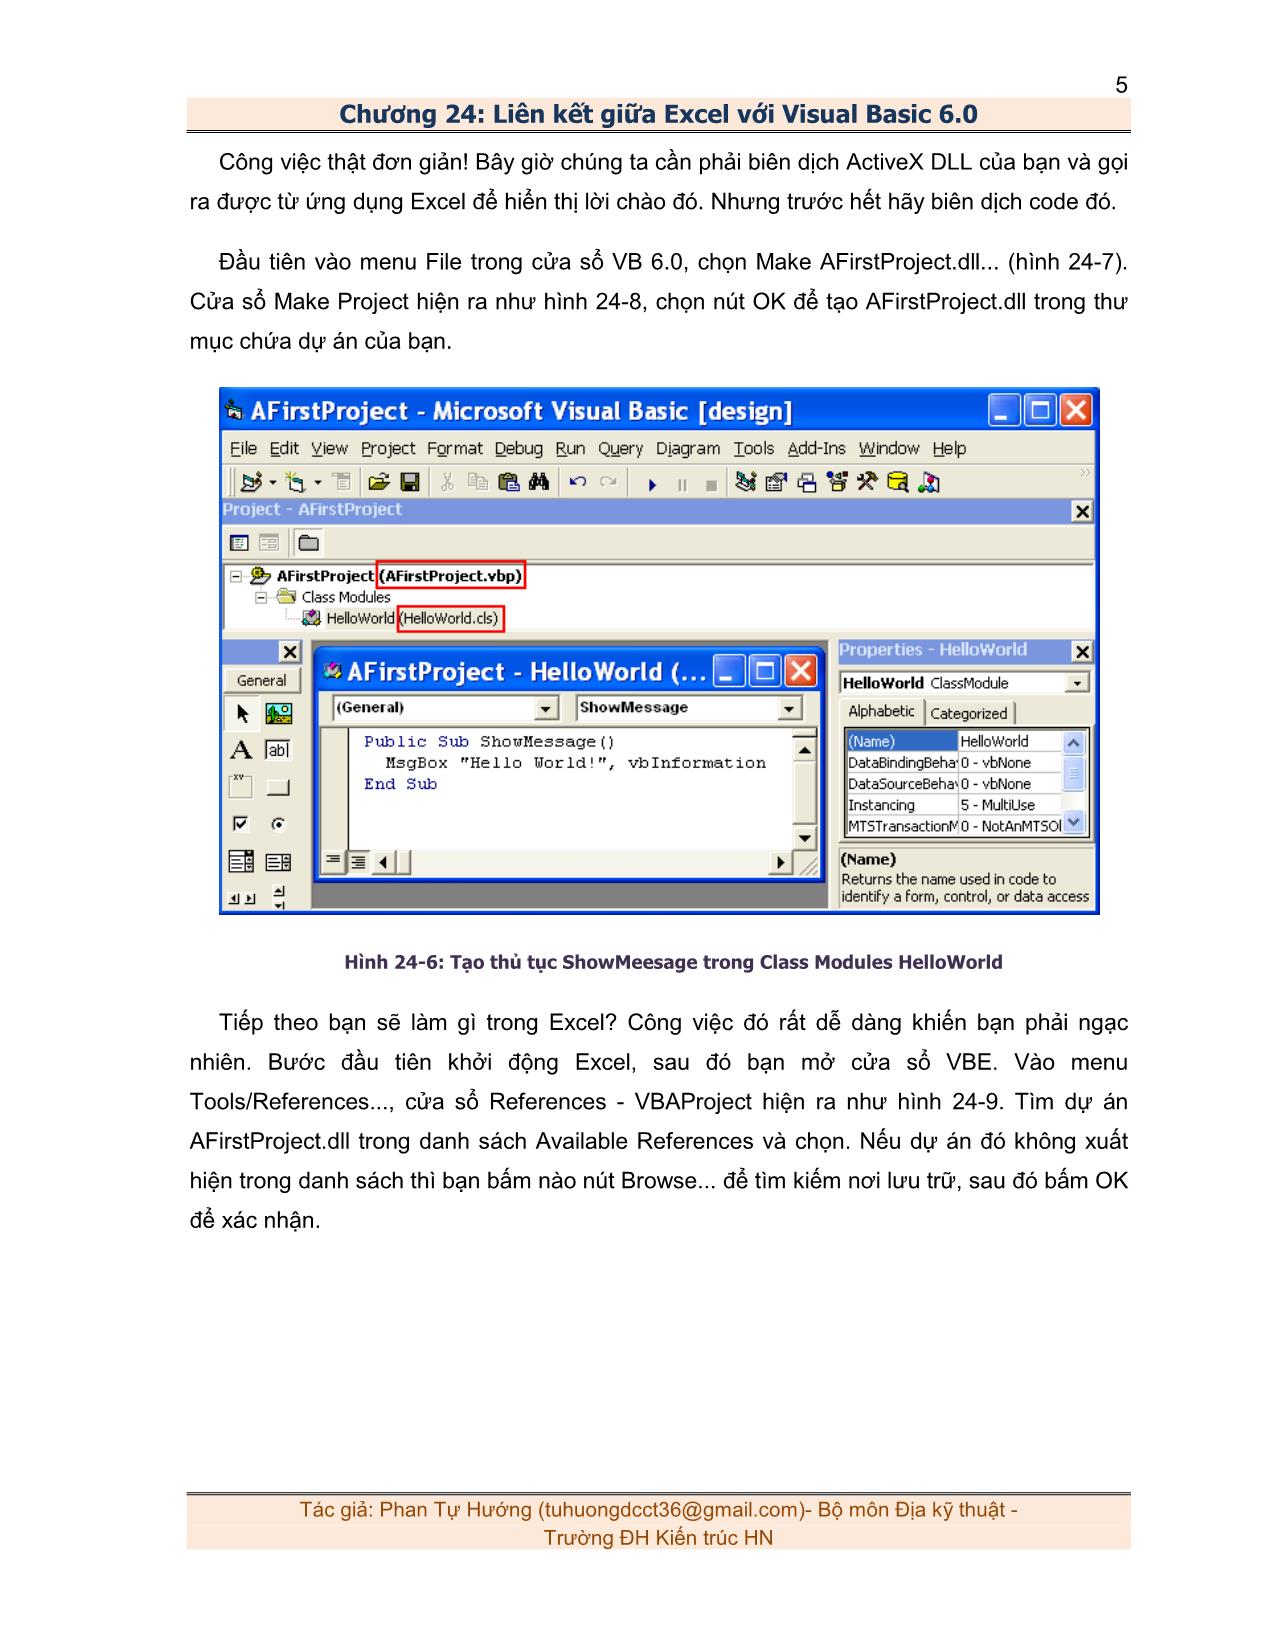 Liên kết giữa Excel với Visual Basic 6.0 trang 5